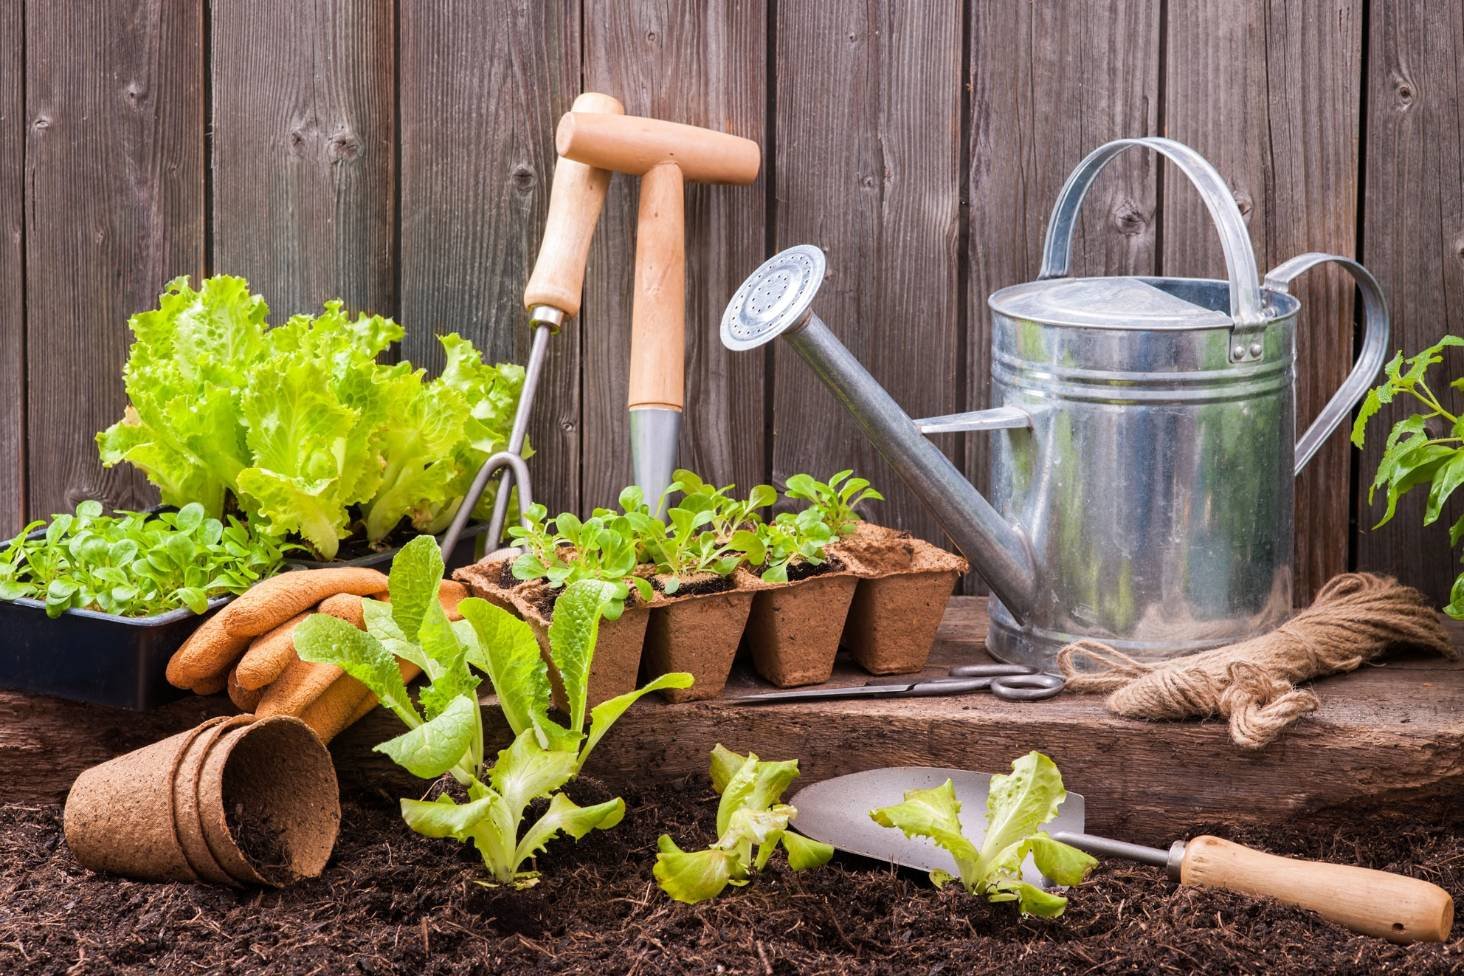 Gardening Basics for Beginners: Where to Start?